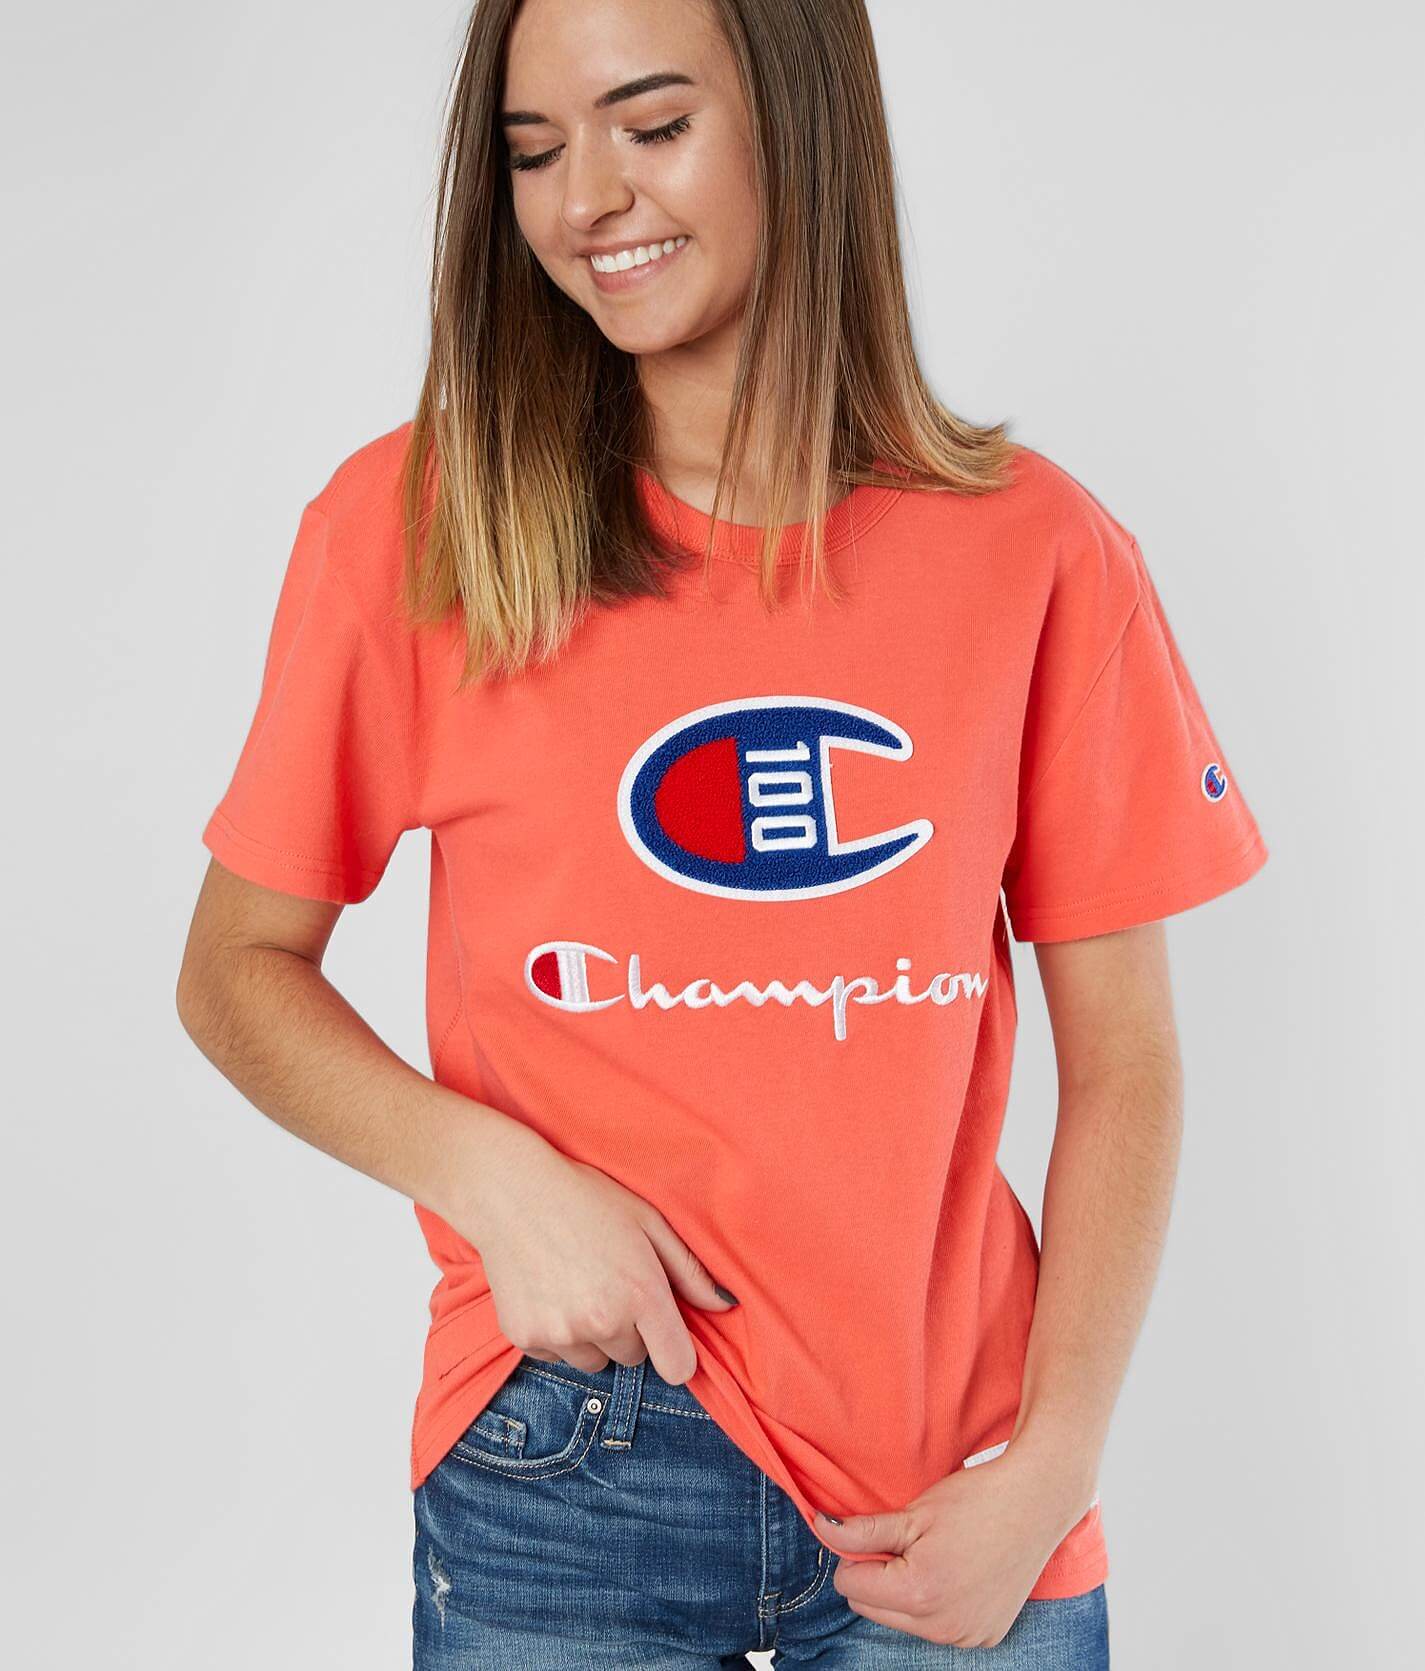 orange champion shirt womens